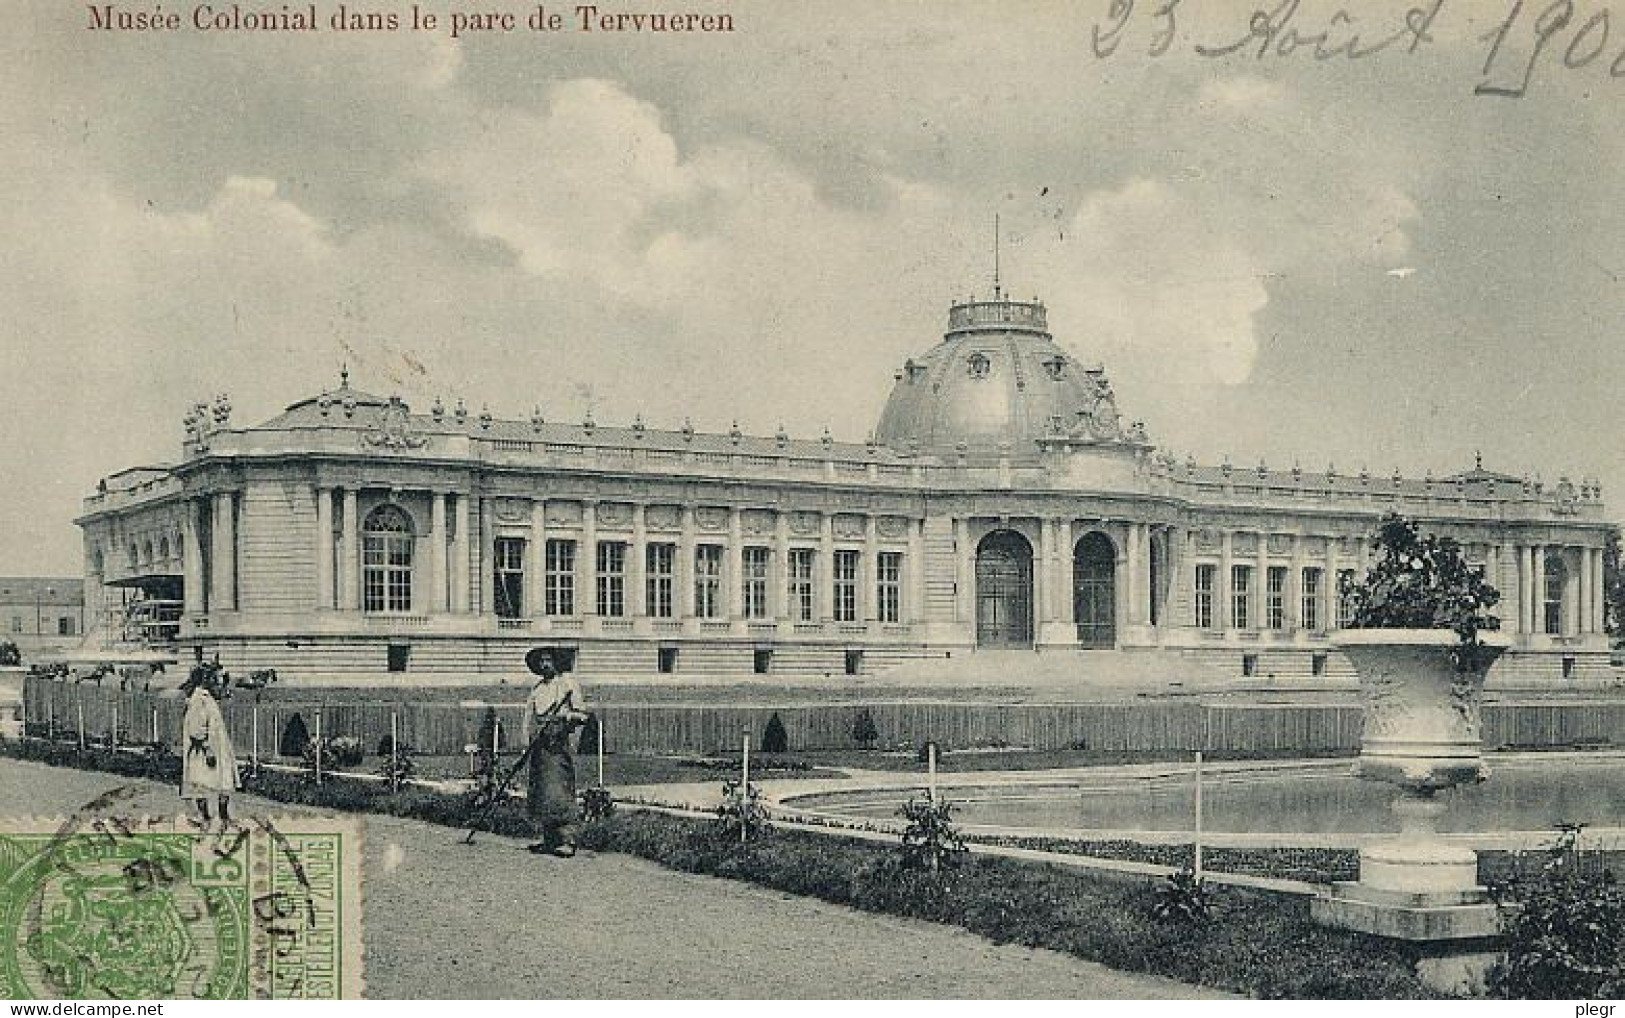 BEL04 01 02 - BRUXELLES / BRUSSEL - MUSEE COLONIAL DANS LE PARC DE TERVUEREN - Musea